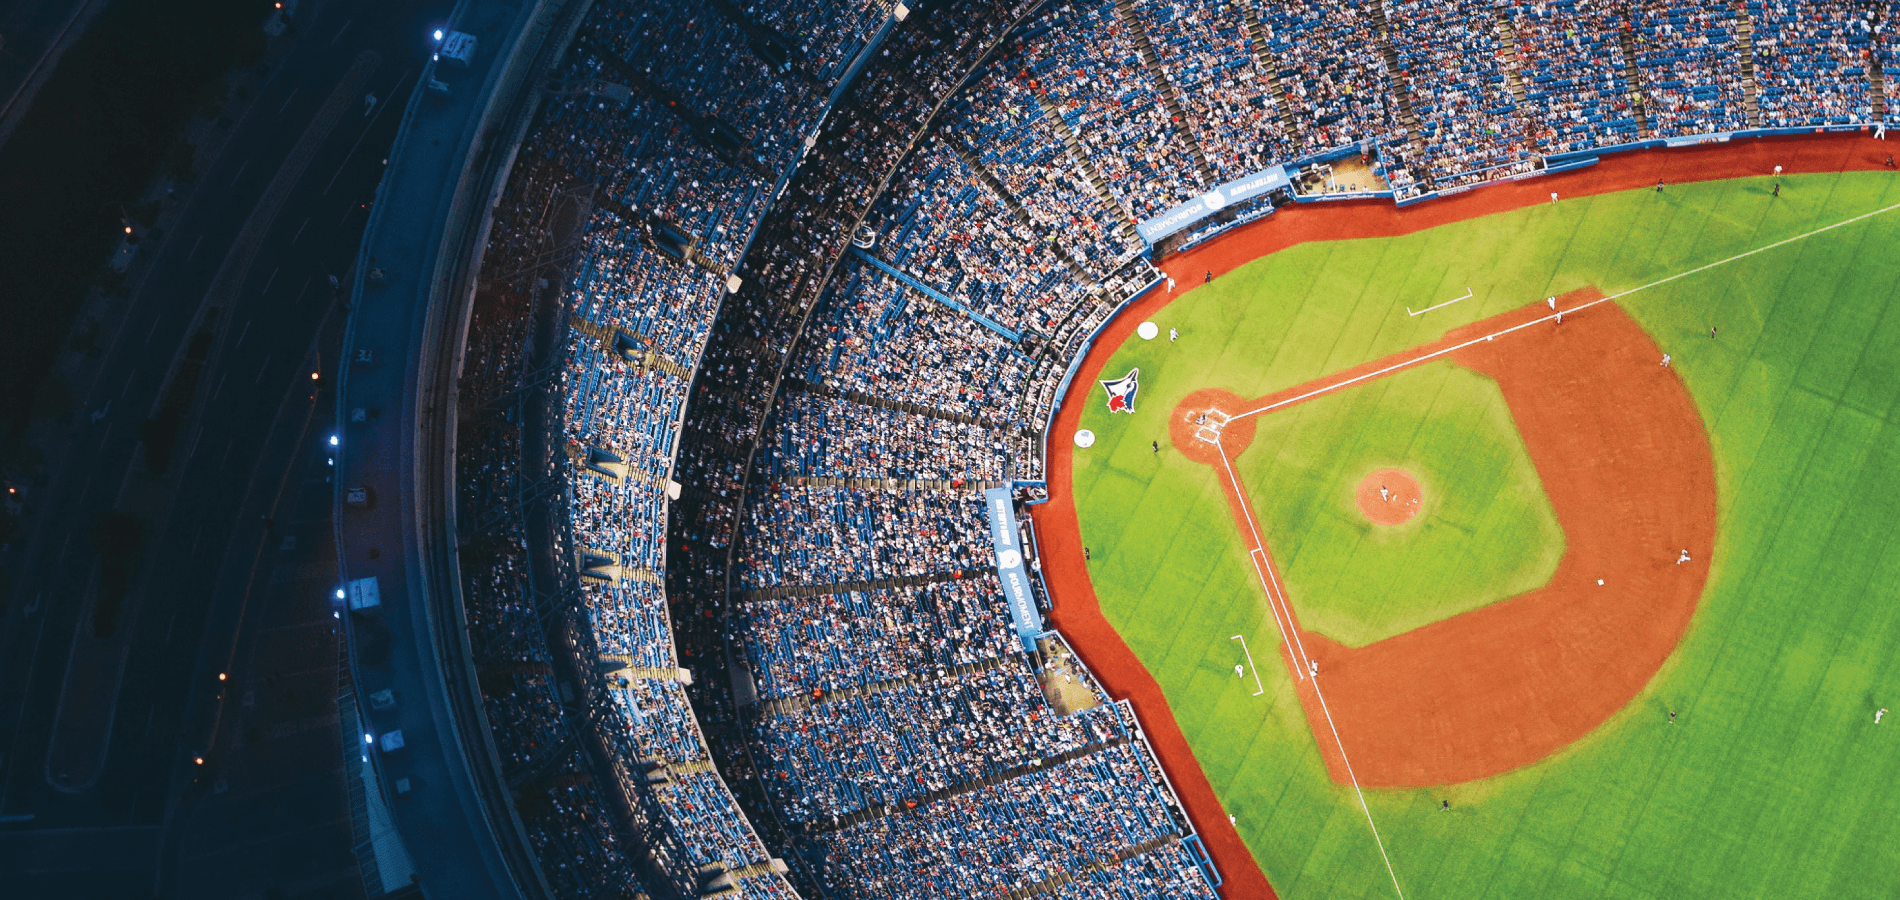 image of a baseball field